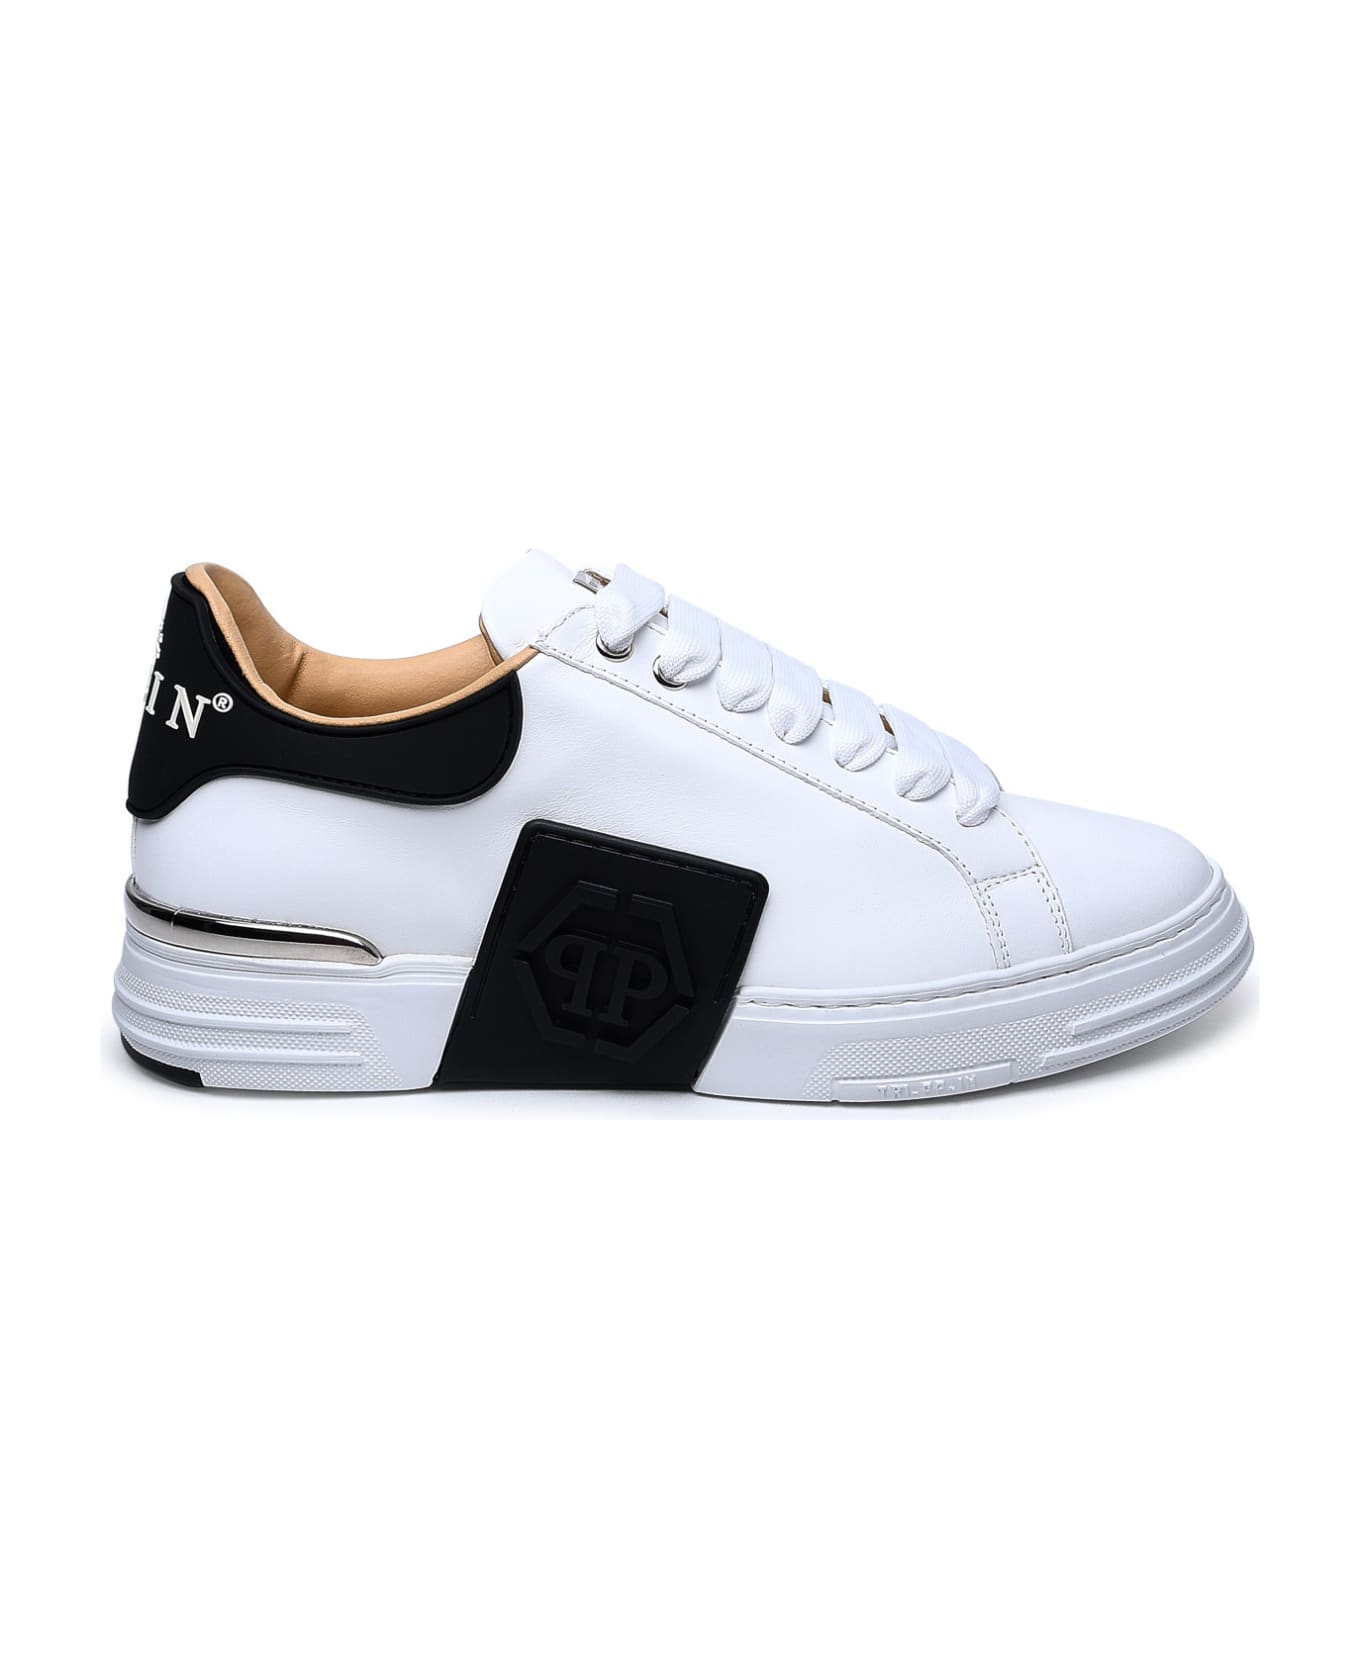 Philipp Plein White Leather Phantom Sneakers - White